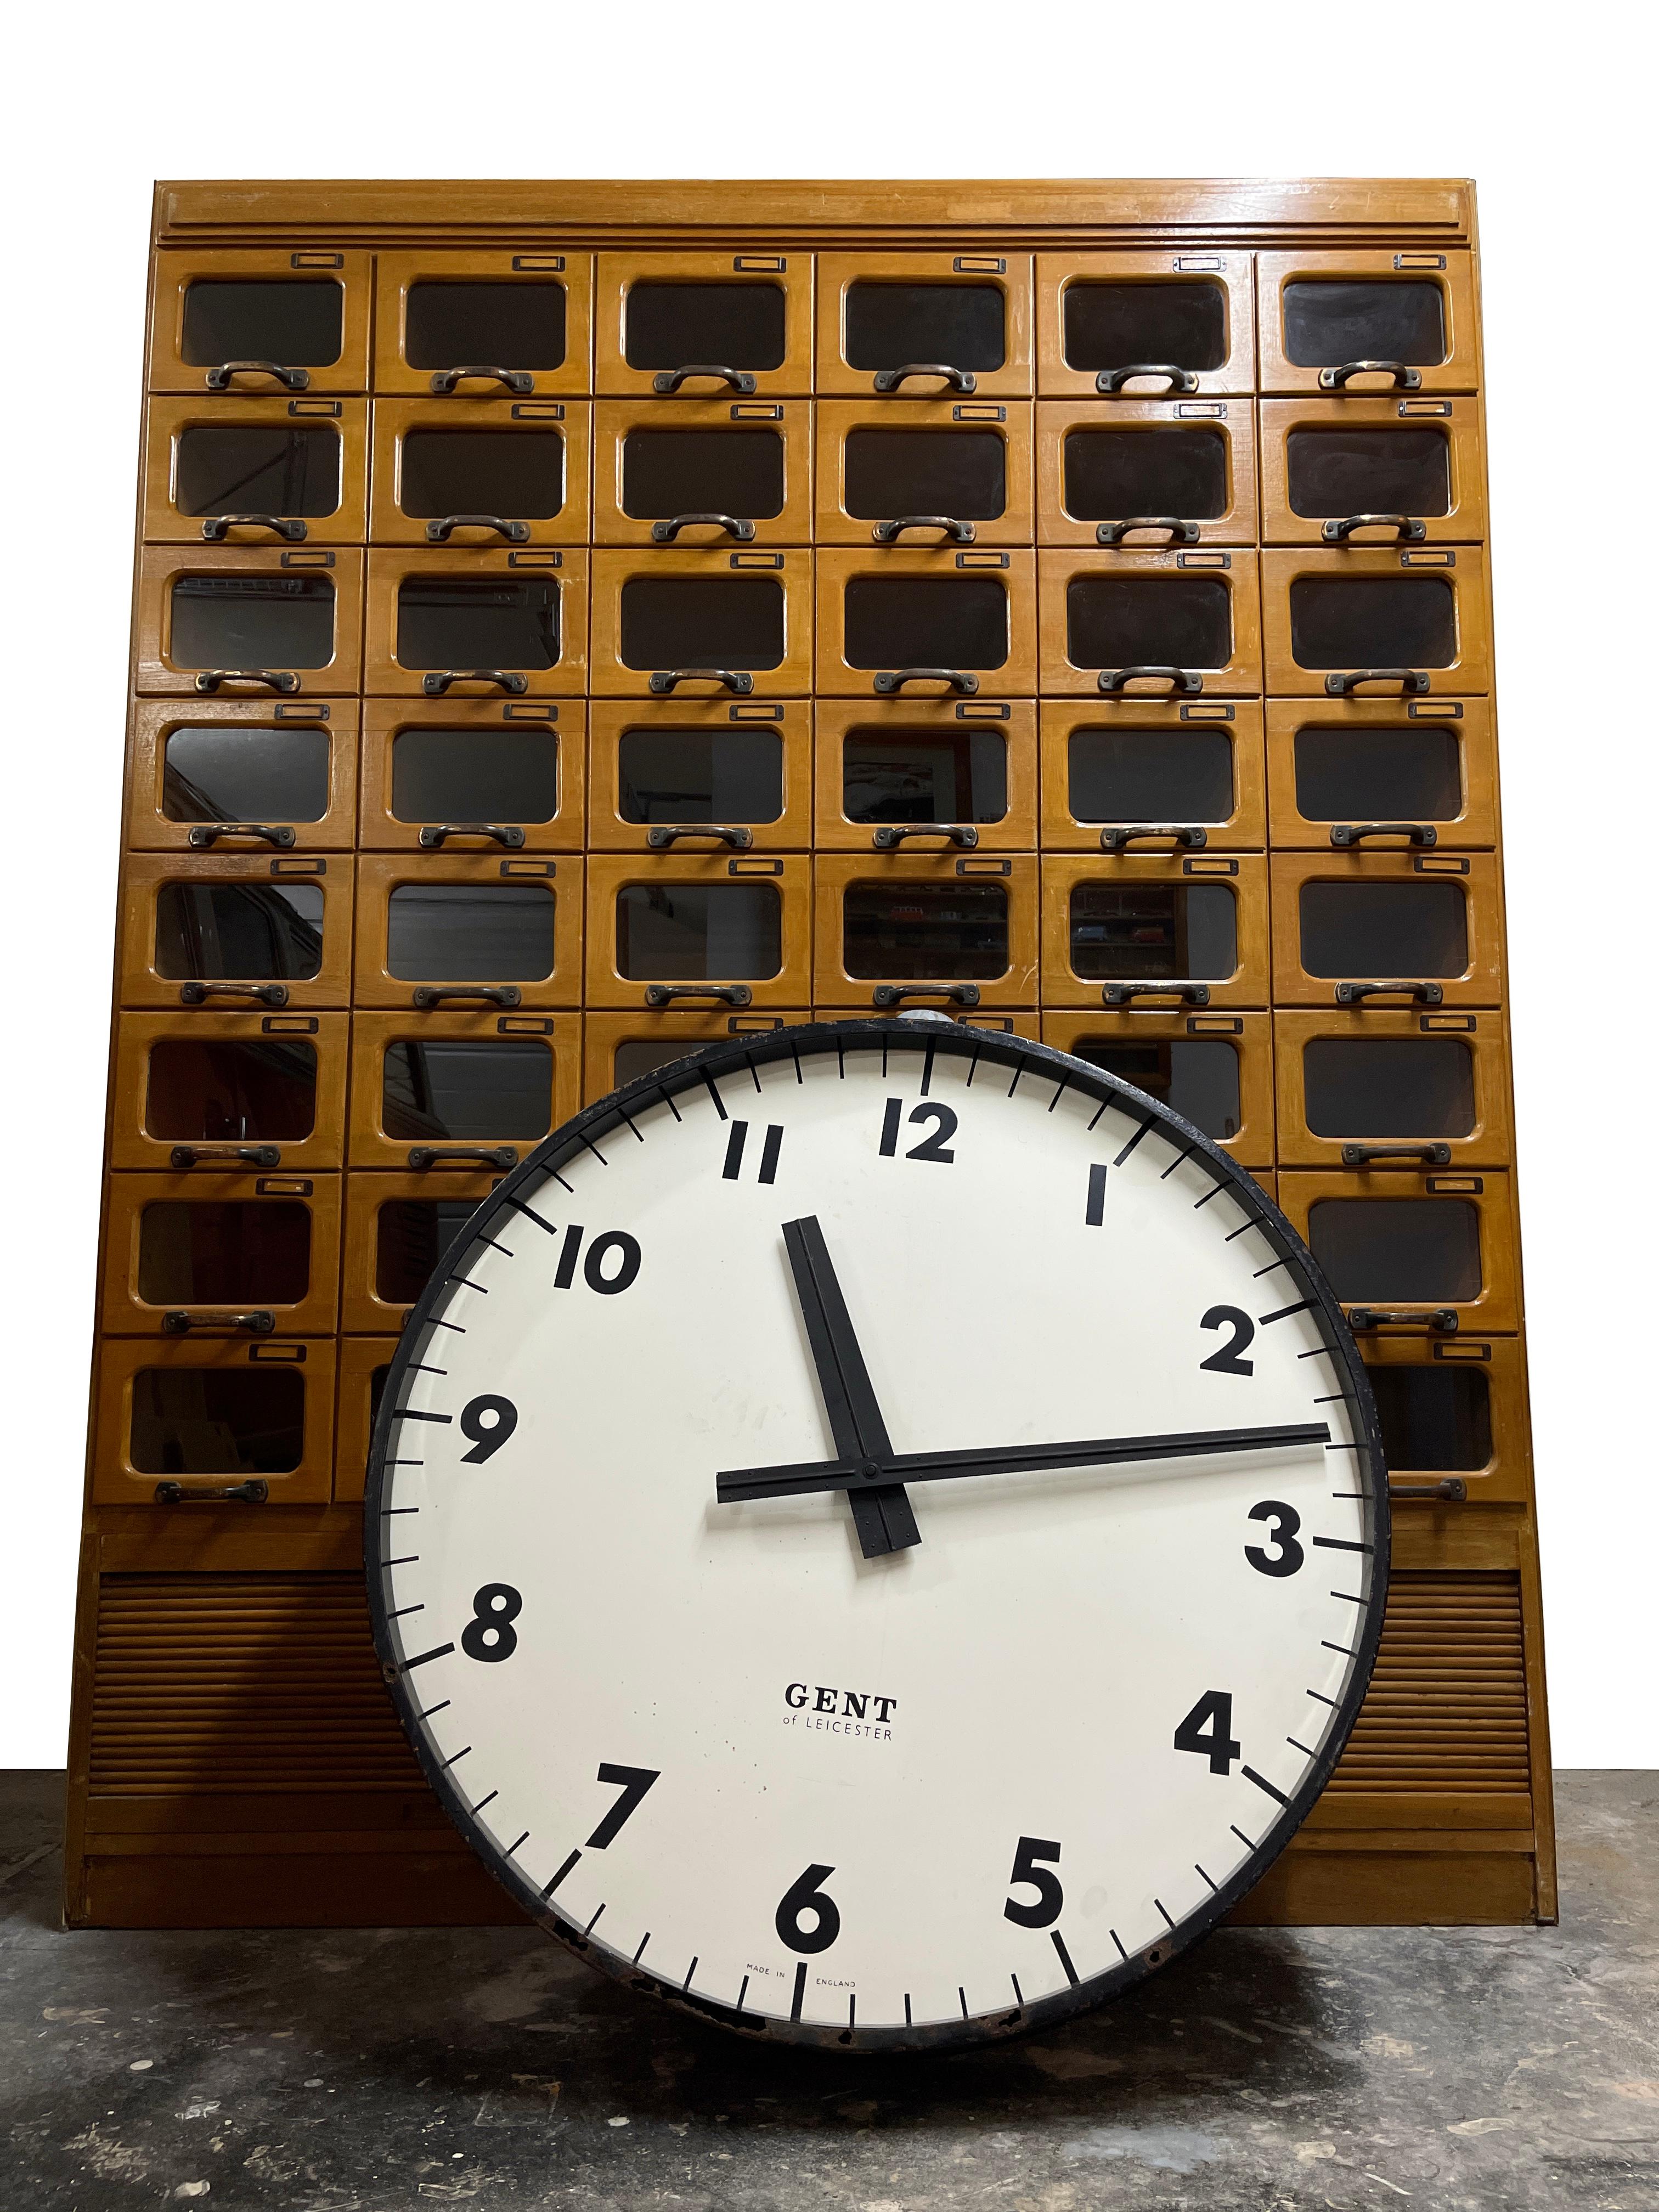 - Une horloge de gare Gents' of Leicester incroyablement rare, d'une proportion énorme, anglaise vers 1940. 
- Un boîtier extérieur noir très lourd et solide avec une plaque arrière d'origine comportant trois pattes pour la fixation au mur.
-